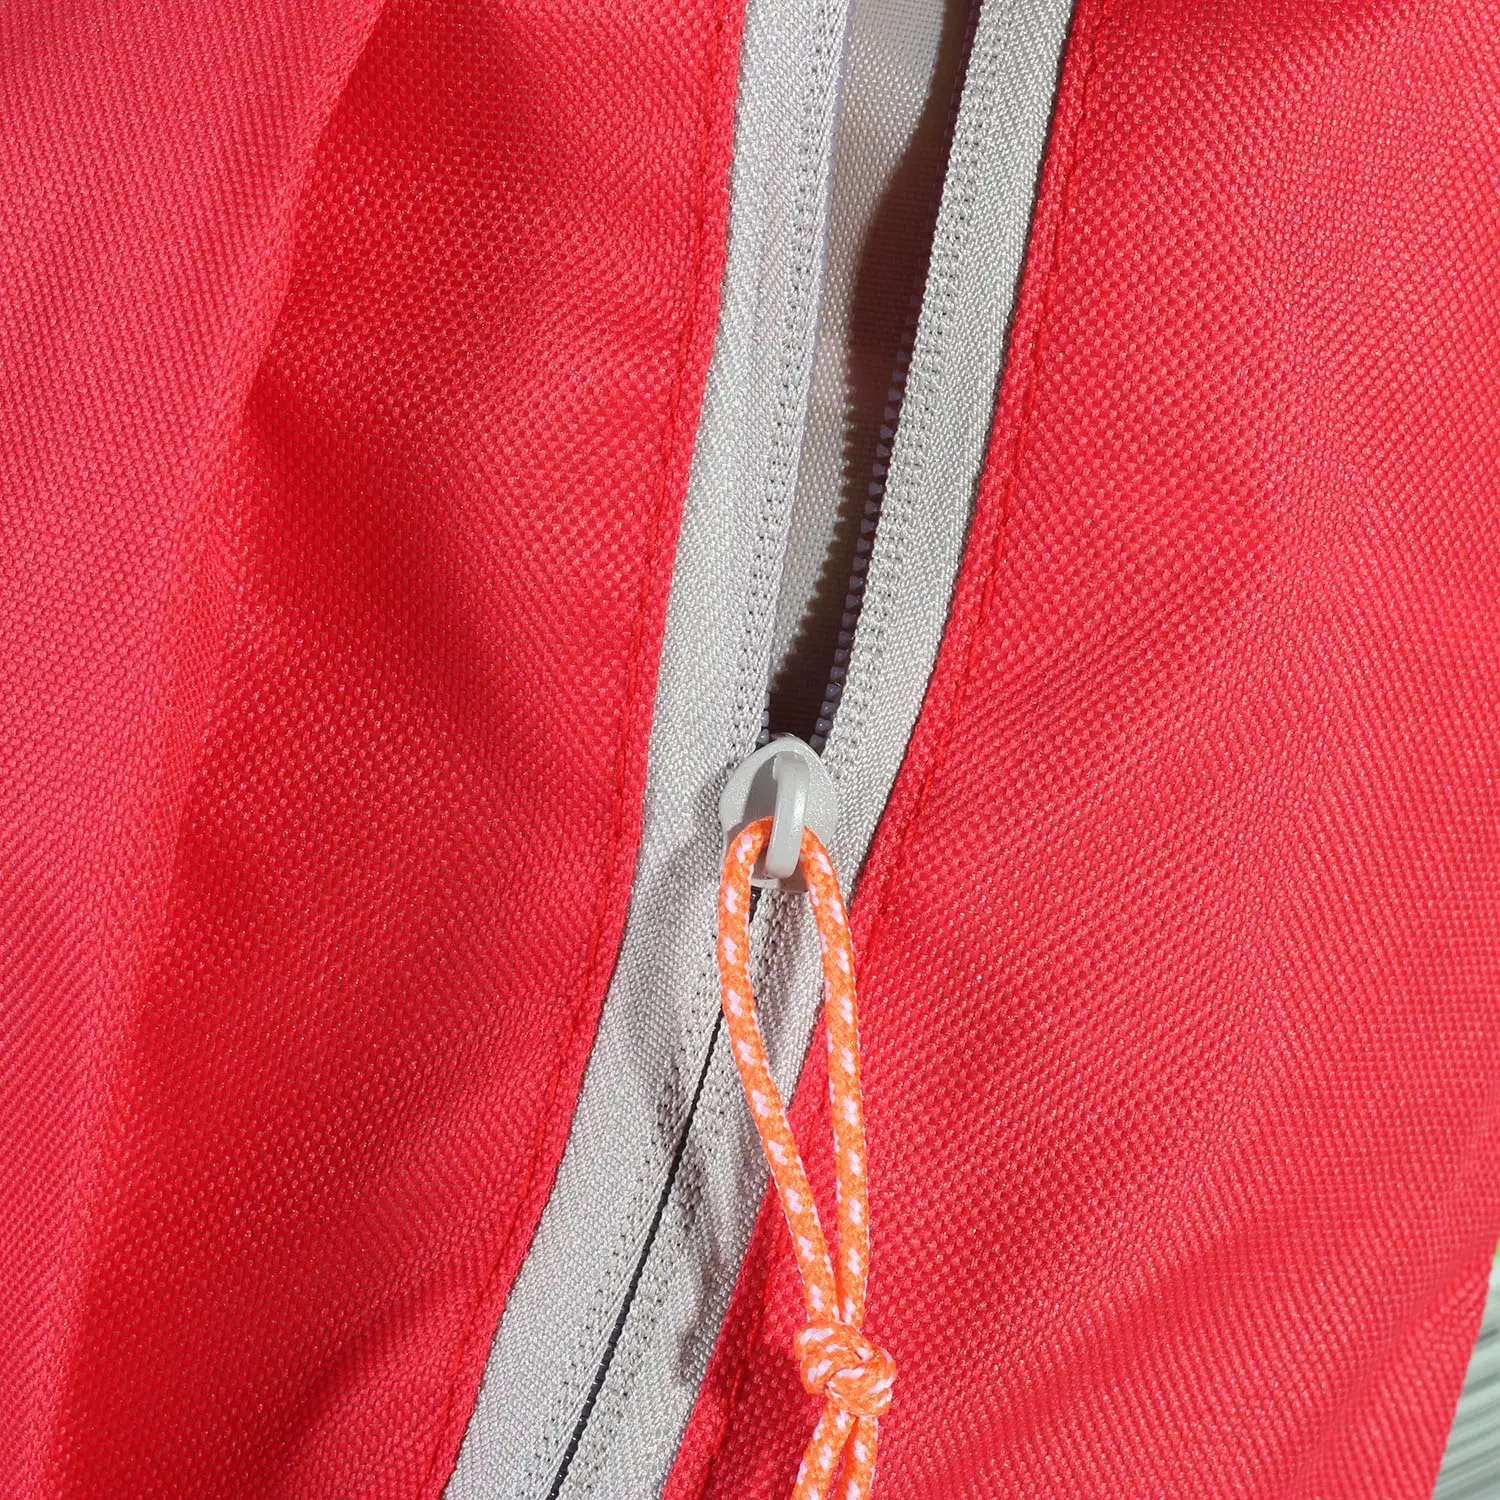 공장 접이식 방수 여행 배낭 남자 등산 여행 가방 하이킹 배낭 야외 스포츠 남자 여자 학교 가방